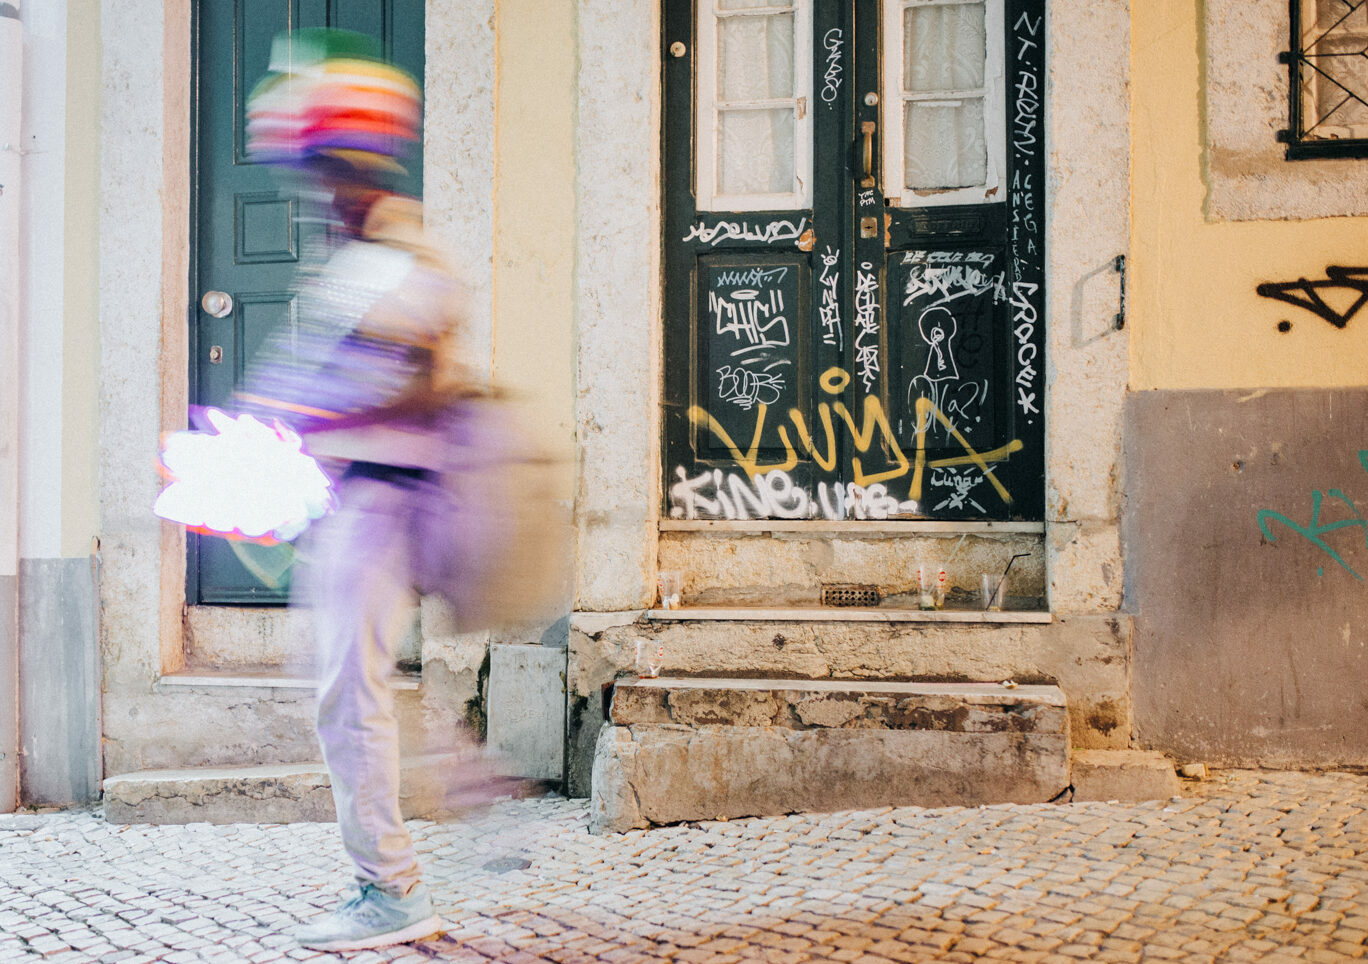 Nightlife kann auch ein Fotospot in Lissabon sein, denn das spielt sich draussen ab. Eine Tür mit Graffiti in Barro Alto mit einem bunten Strassenverkäufer